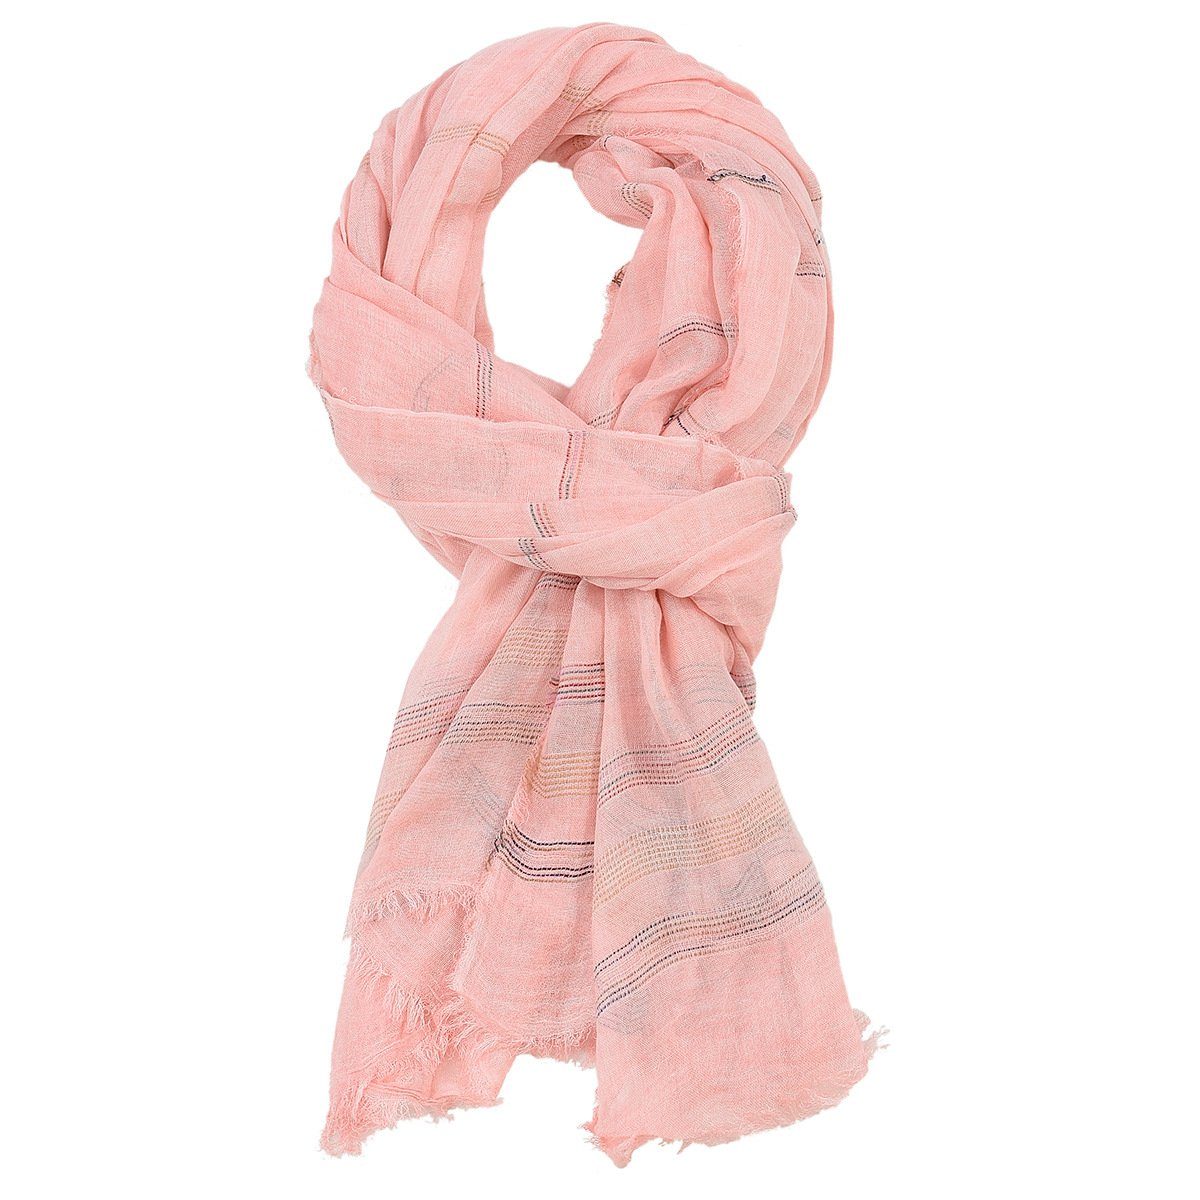 GelldG Modeschal Reversible Warme und weiche Unisex Schal Stola Wrap Solid Color rosa